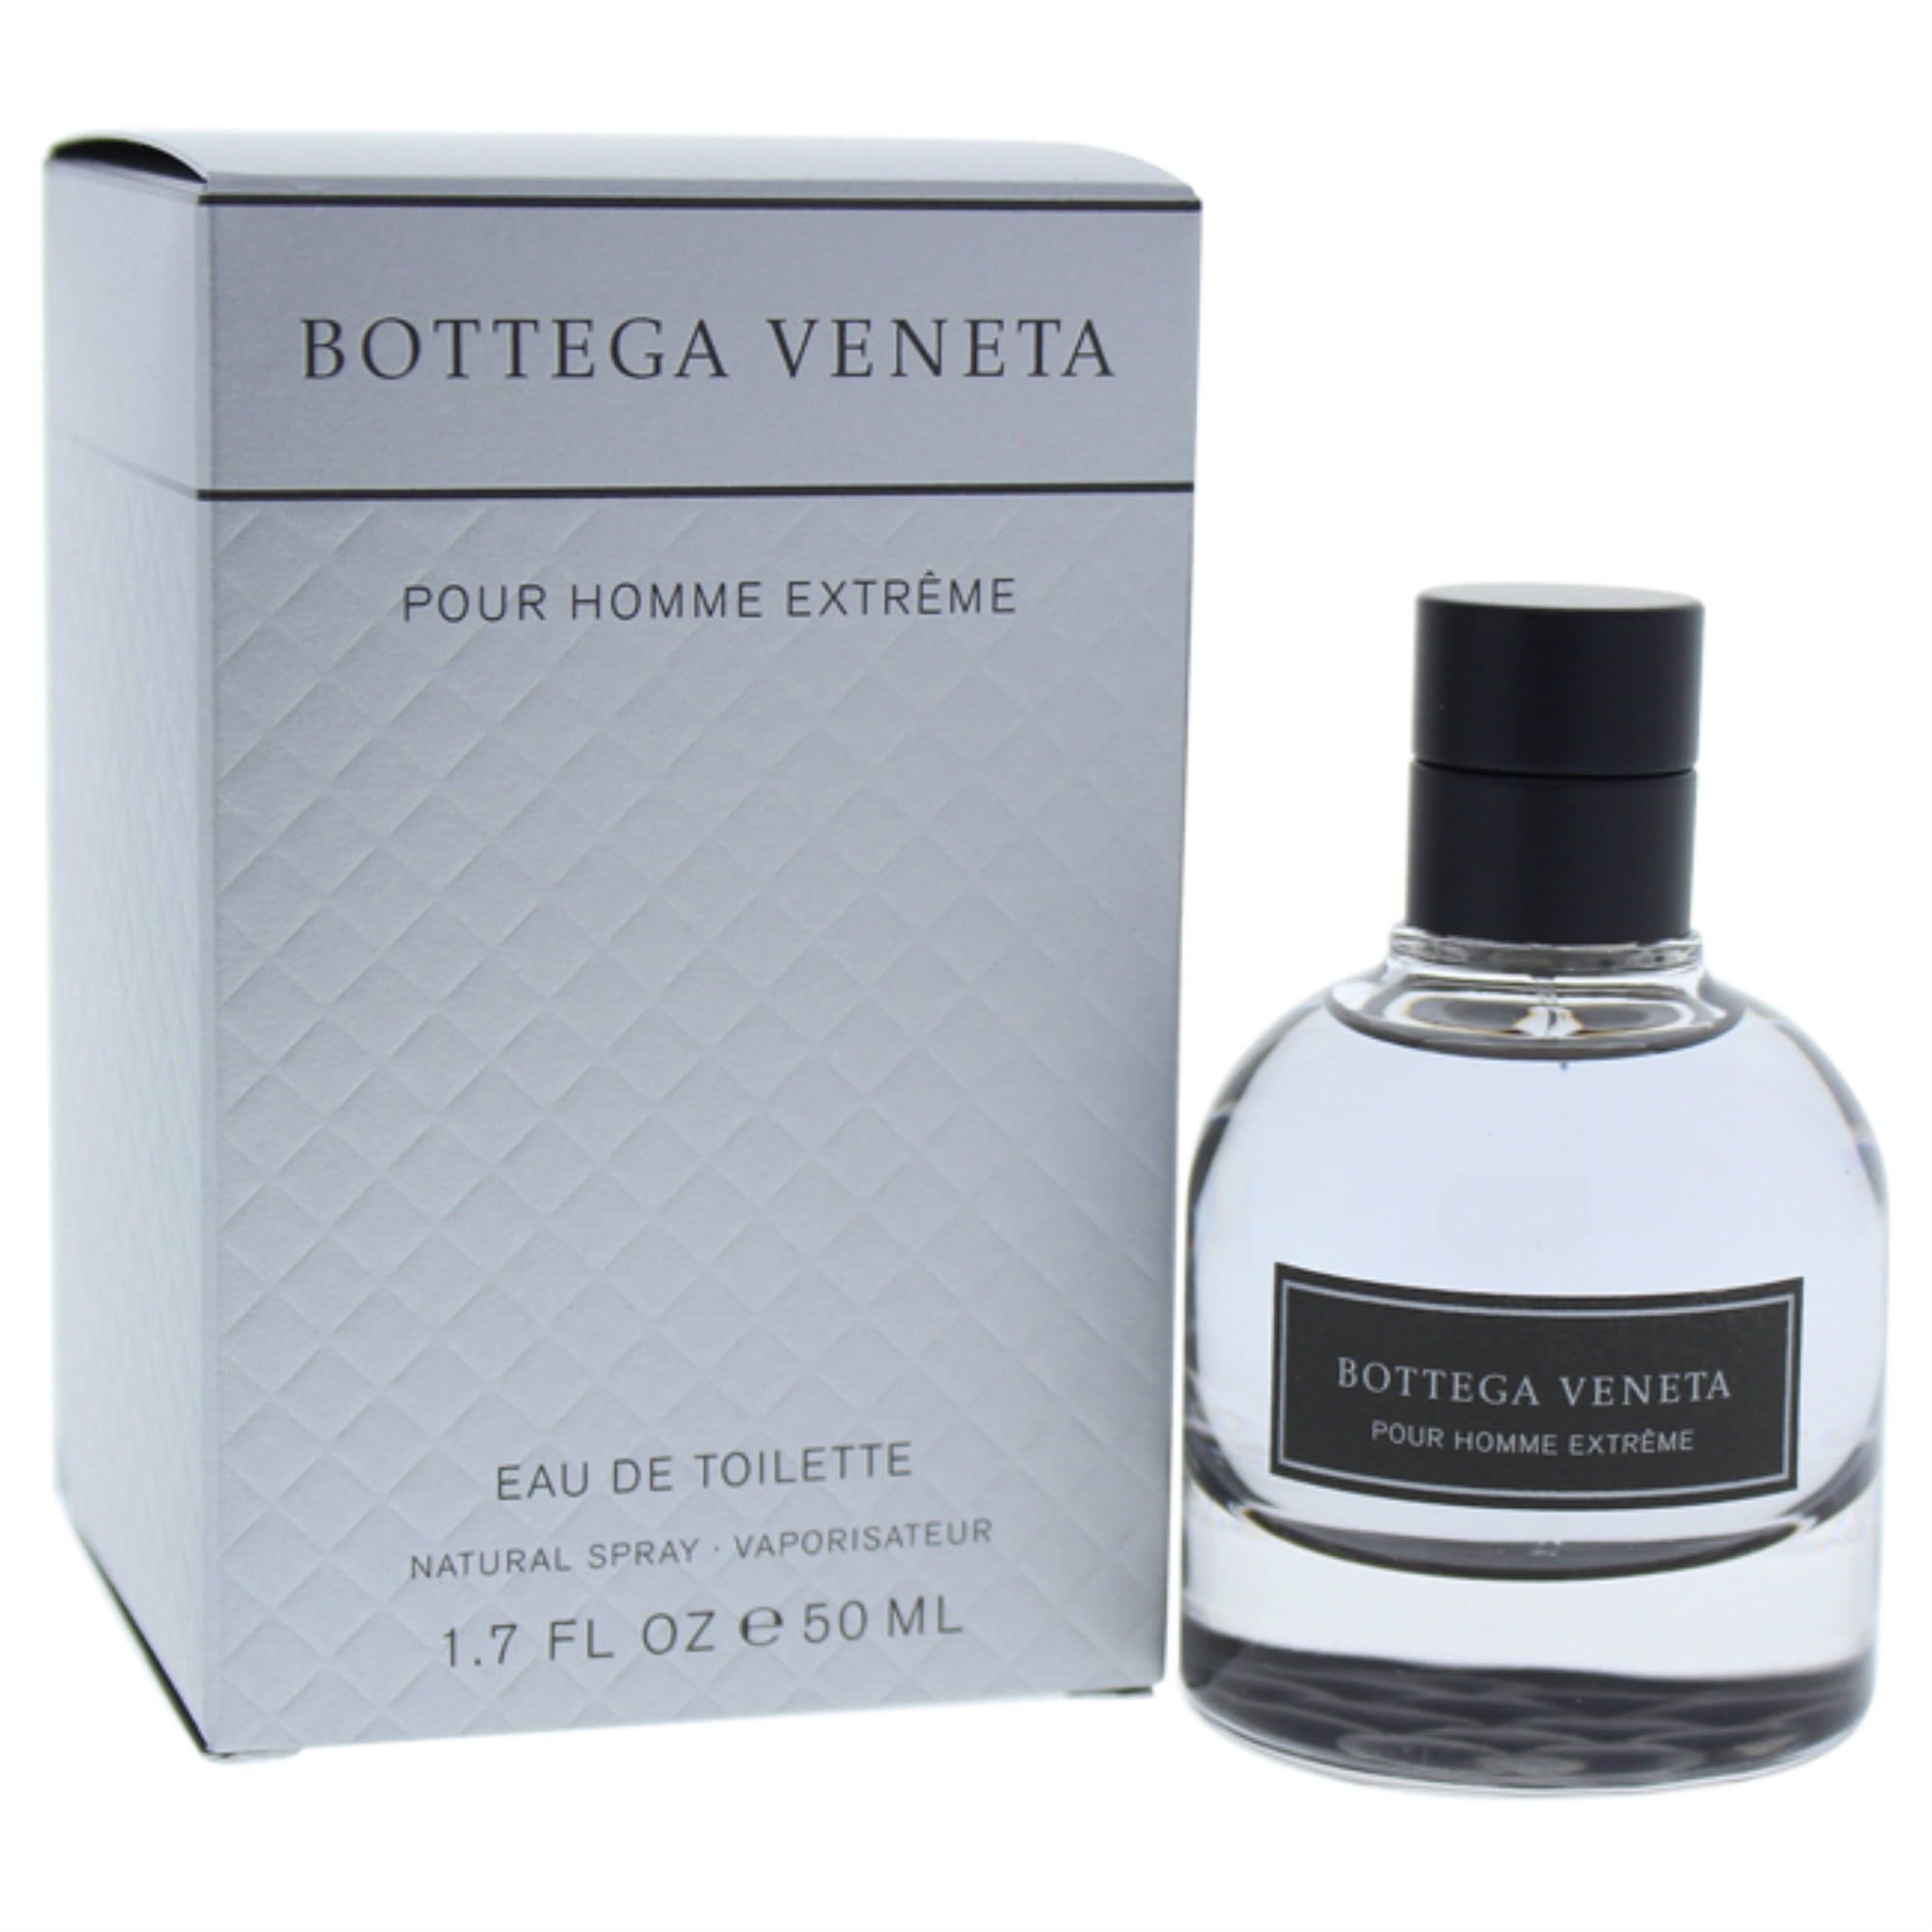 Pour Homme Extreme by Bottega Veneta for Men - 1.7 oz EDT Spray